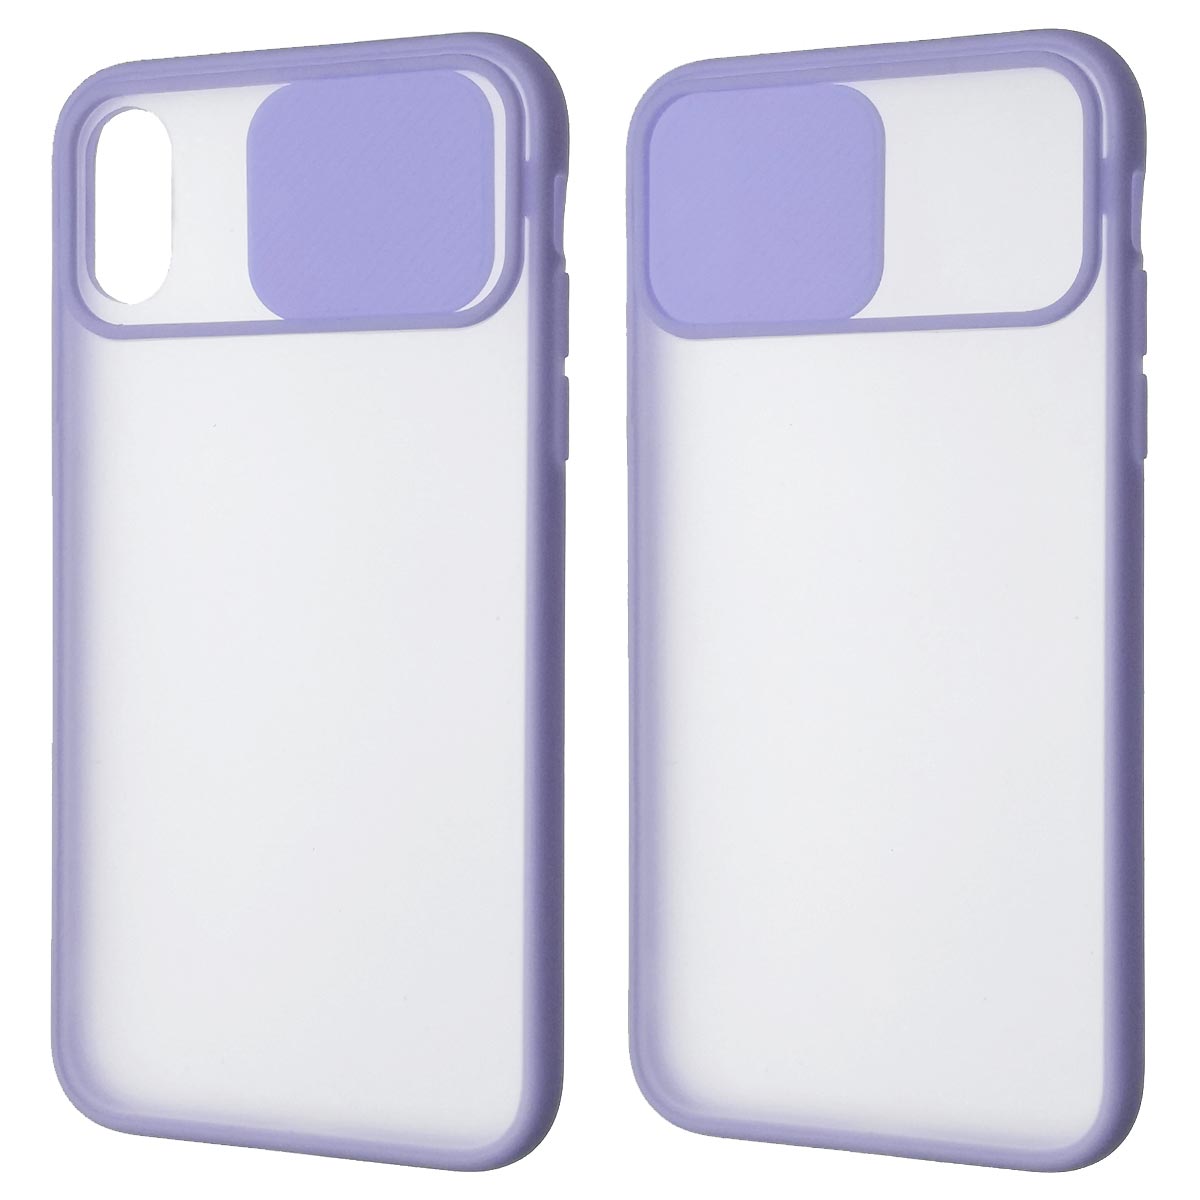 Чехол накладка для APPLE iPhone X, iPhone XS, силикон, пластик, матовый, со шторкой для защиты задней камеры, цвет окантовки сиреневый